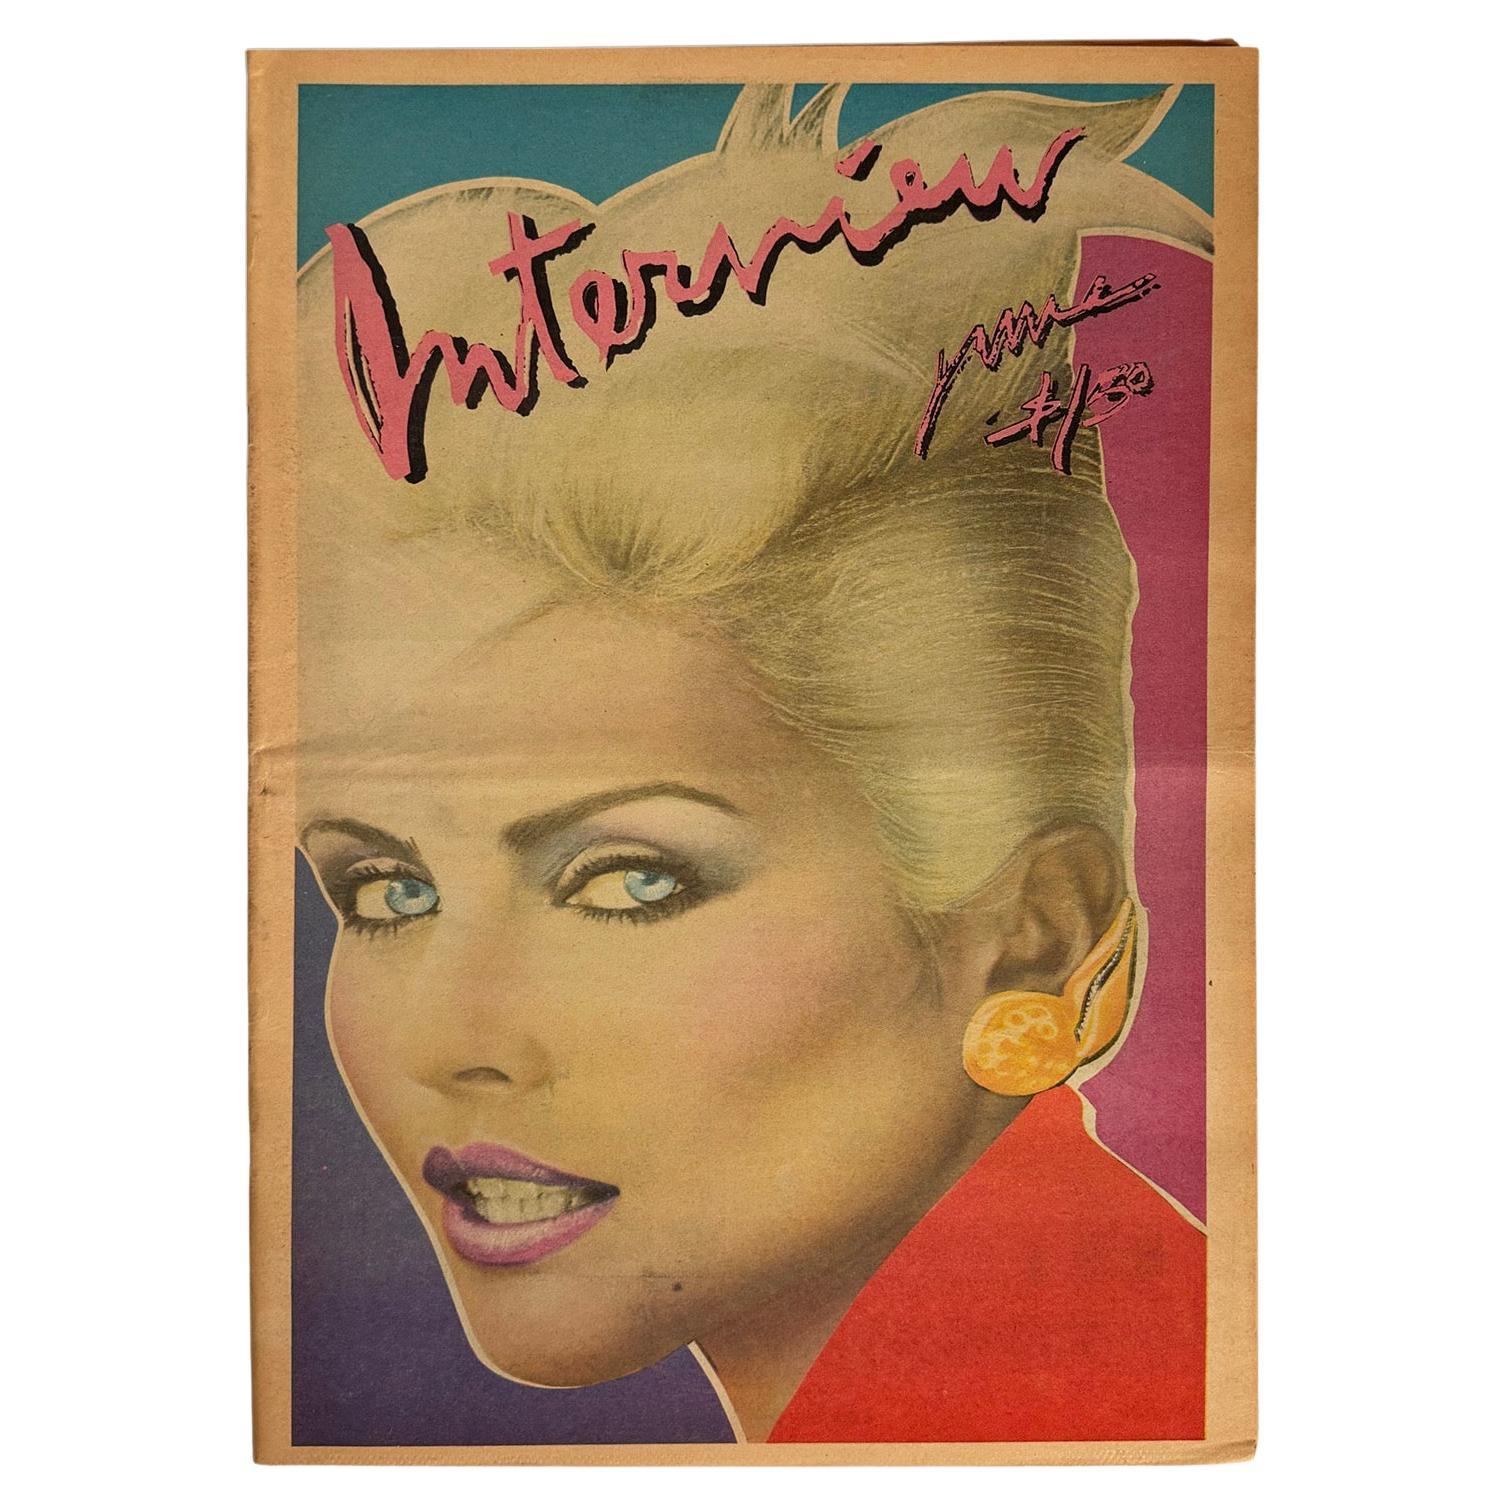 Vintage Original 1979 Andy Warhol Interview-Magazin mit einem auffälligen Debbie Harry Cover.

Die vollständige Ausgabe 1979. Zeitungsbestand. Offsetdruck.
Maße: 11 x 17 Zoll.
Leichte Gebrauchsspuren, sonst sehr guter Vintage-Zustand.
Unsigniert aus